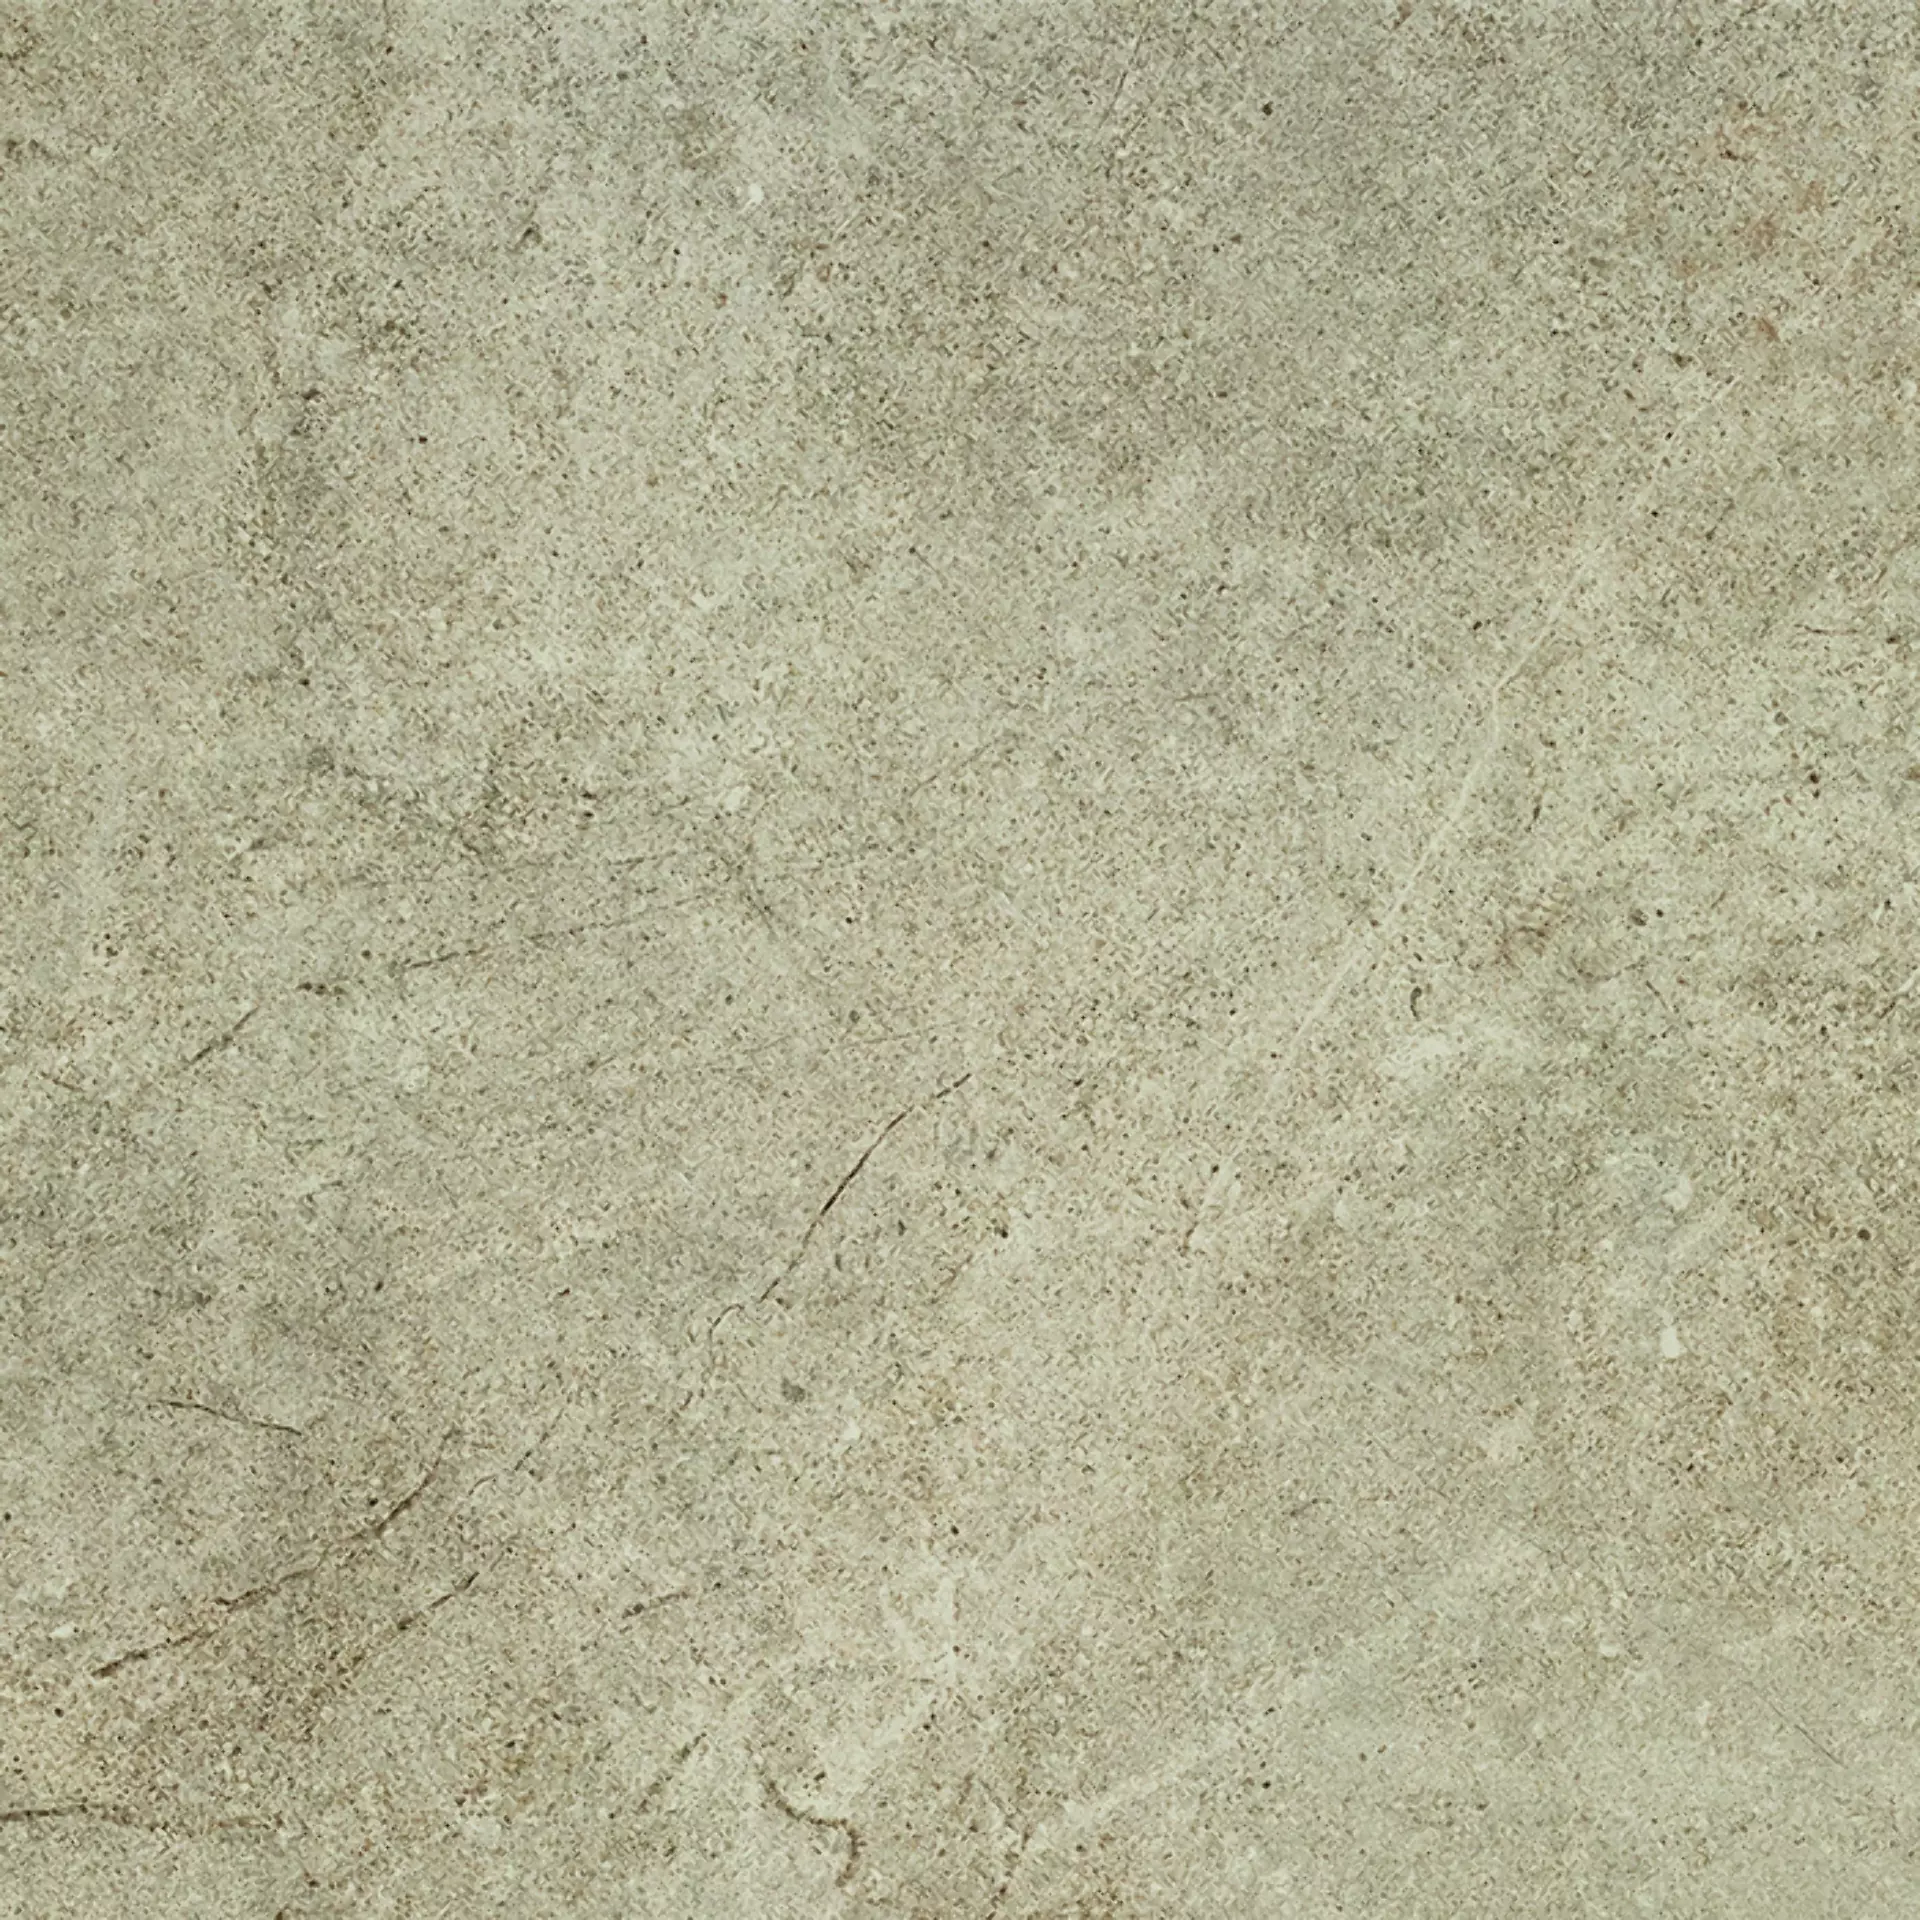 Bodenfliese,Wandfliese Cercom Archistone Sand Naturale Sand 1081736 natur 60x60cm rektifiziert 9,5mm